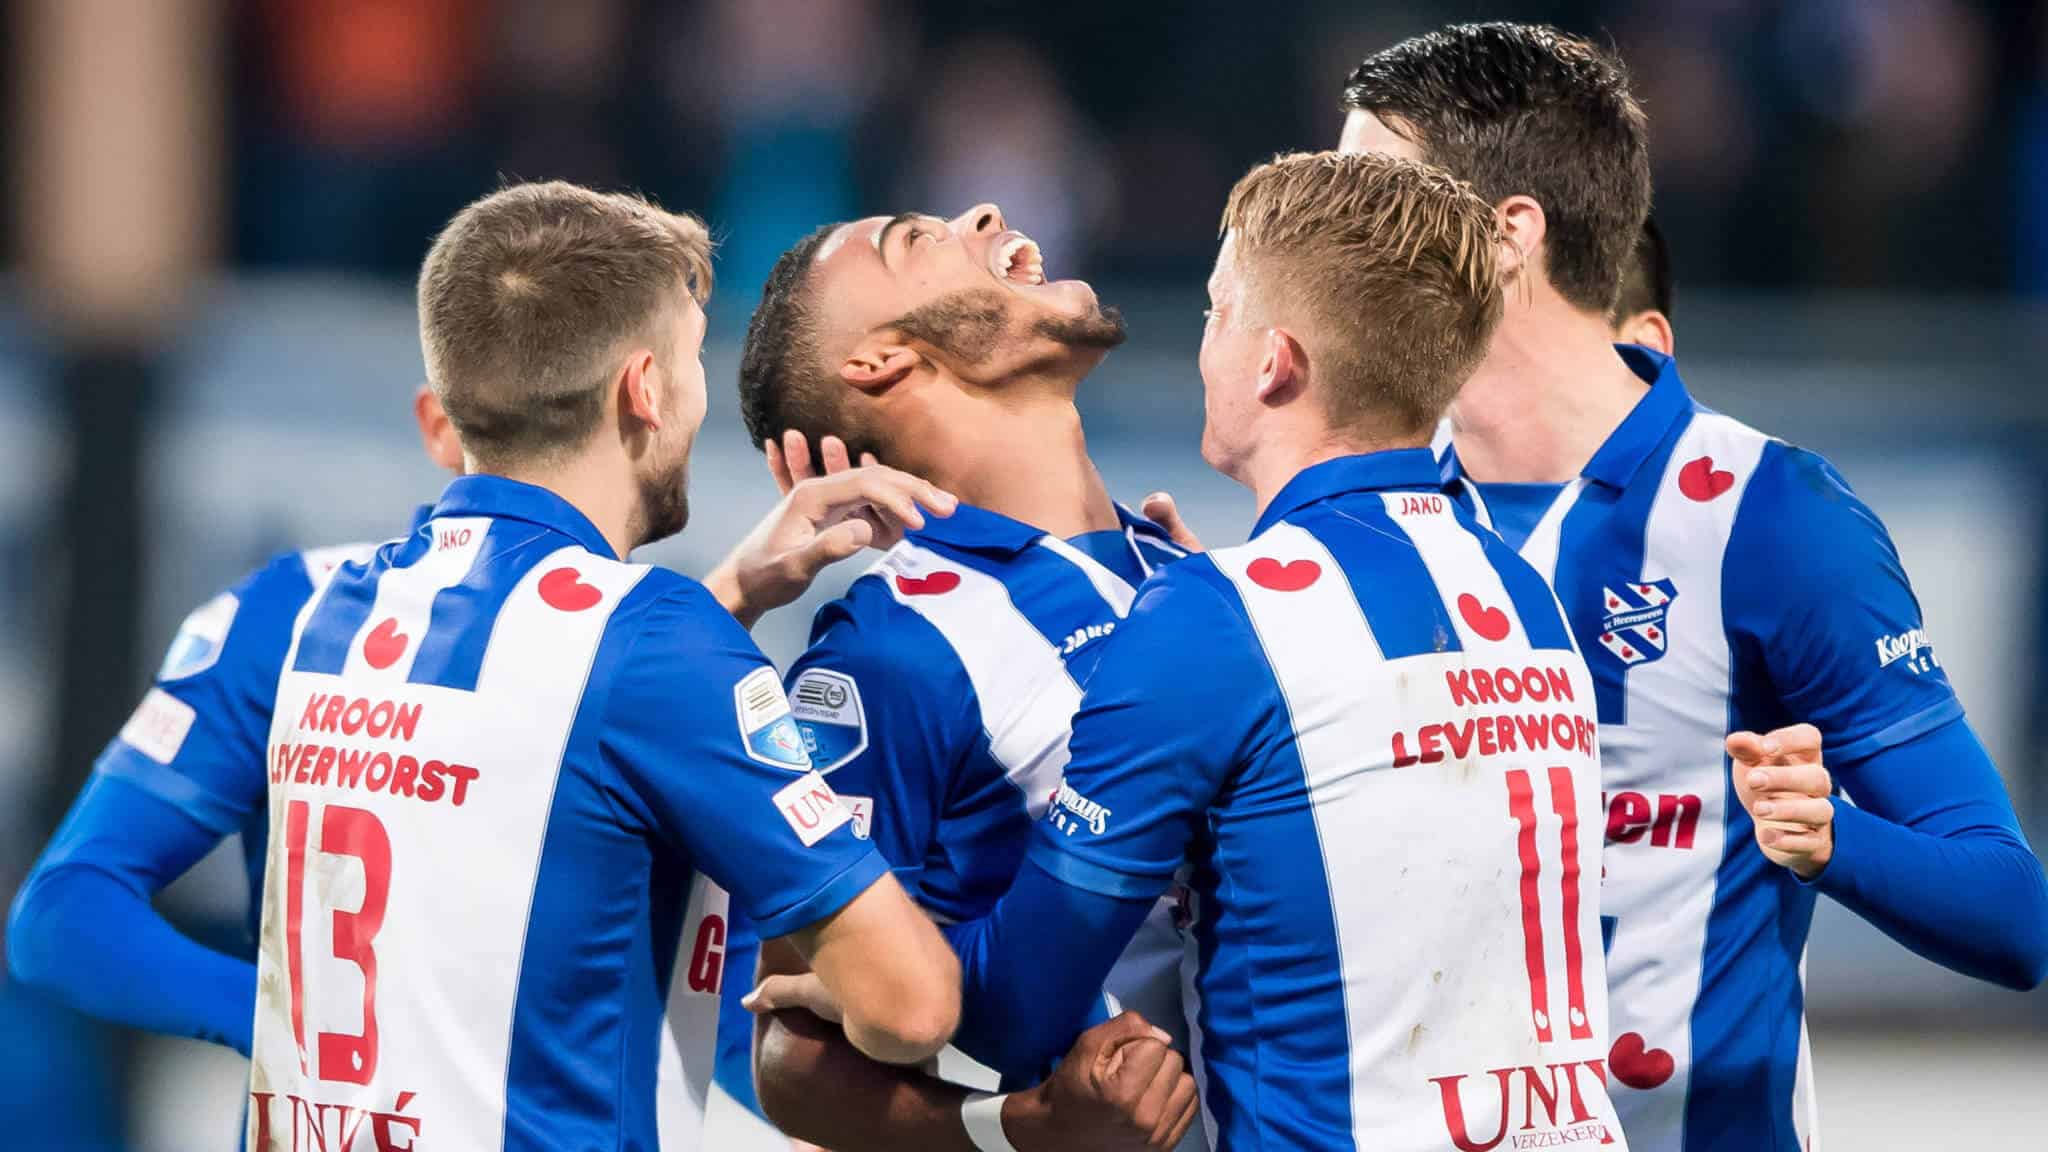 heerenveen fc soccer team 2019